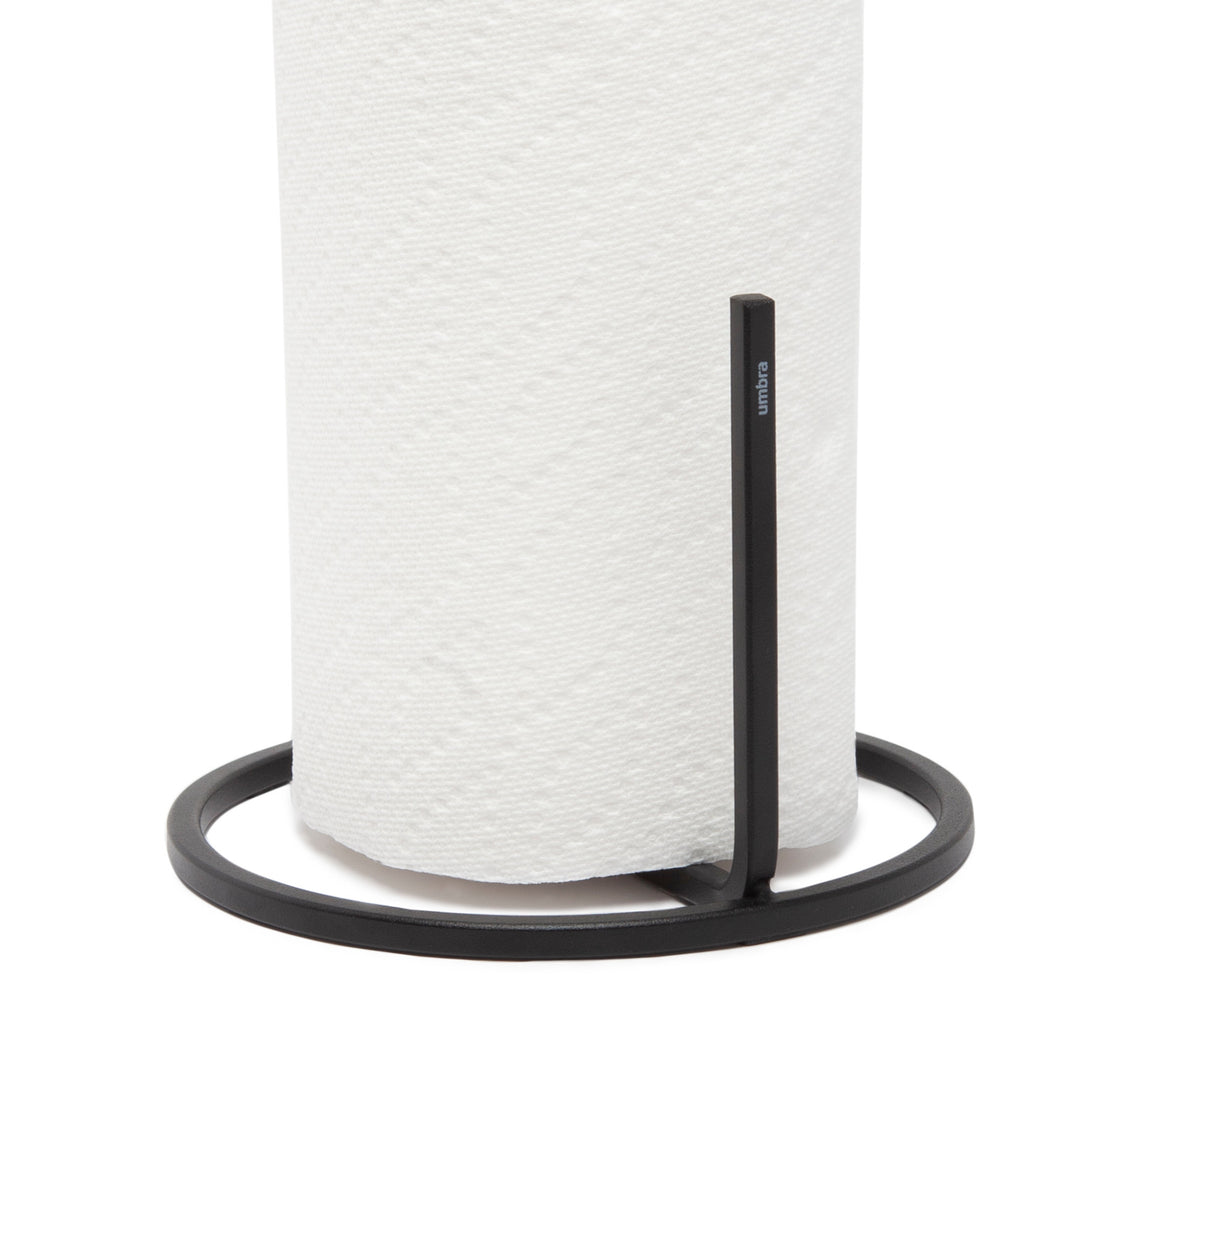 Umbra Metal Nickel Paper Towel Holder